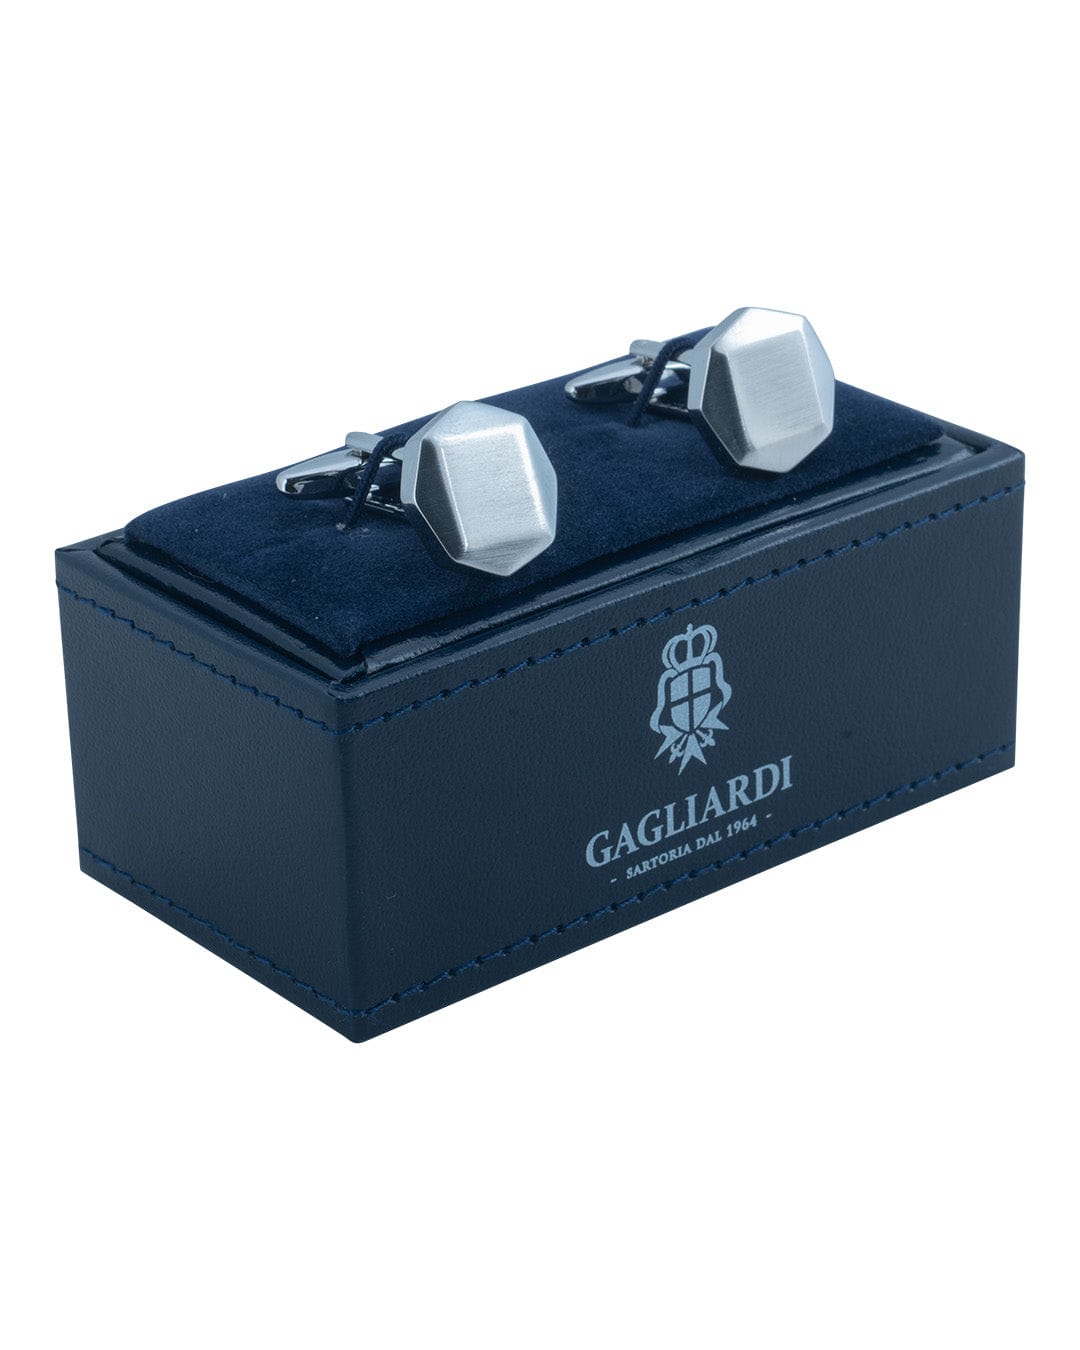 Gagliardi Cufflinks ONE Gagliardi Brushed Silver Octagonal Cufflinks